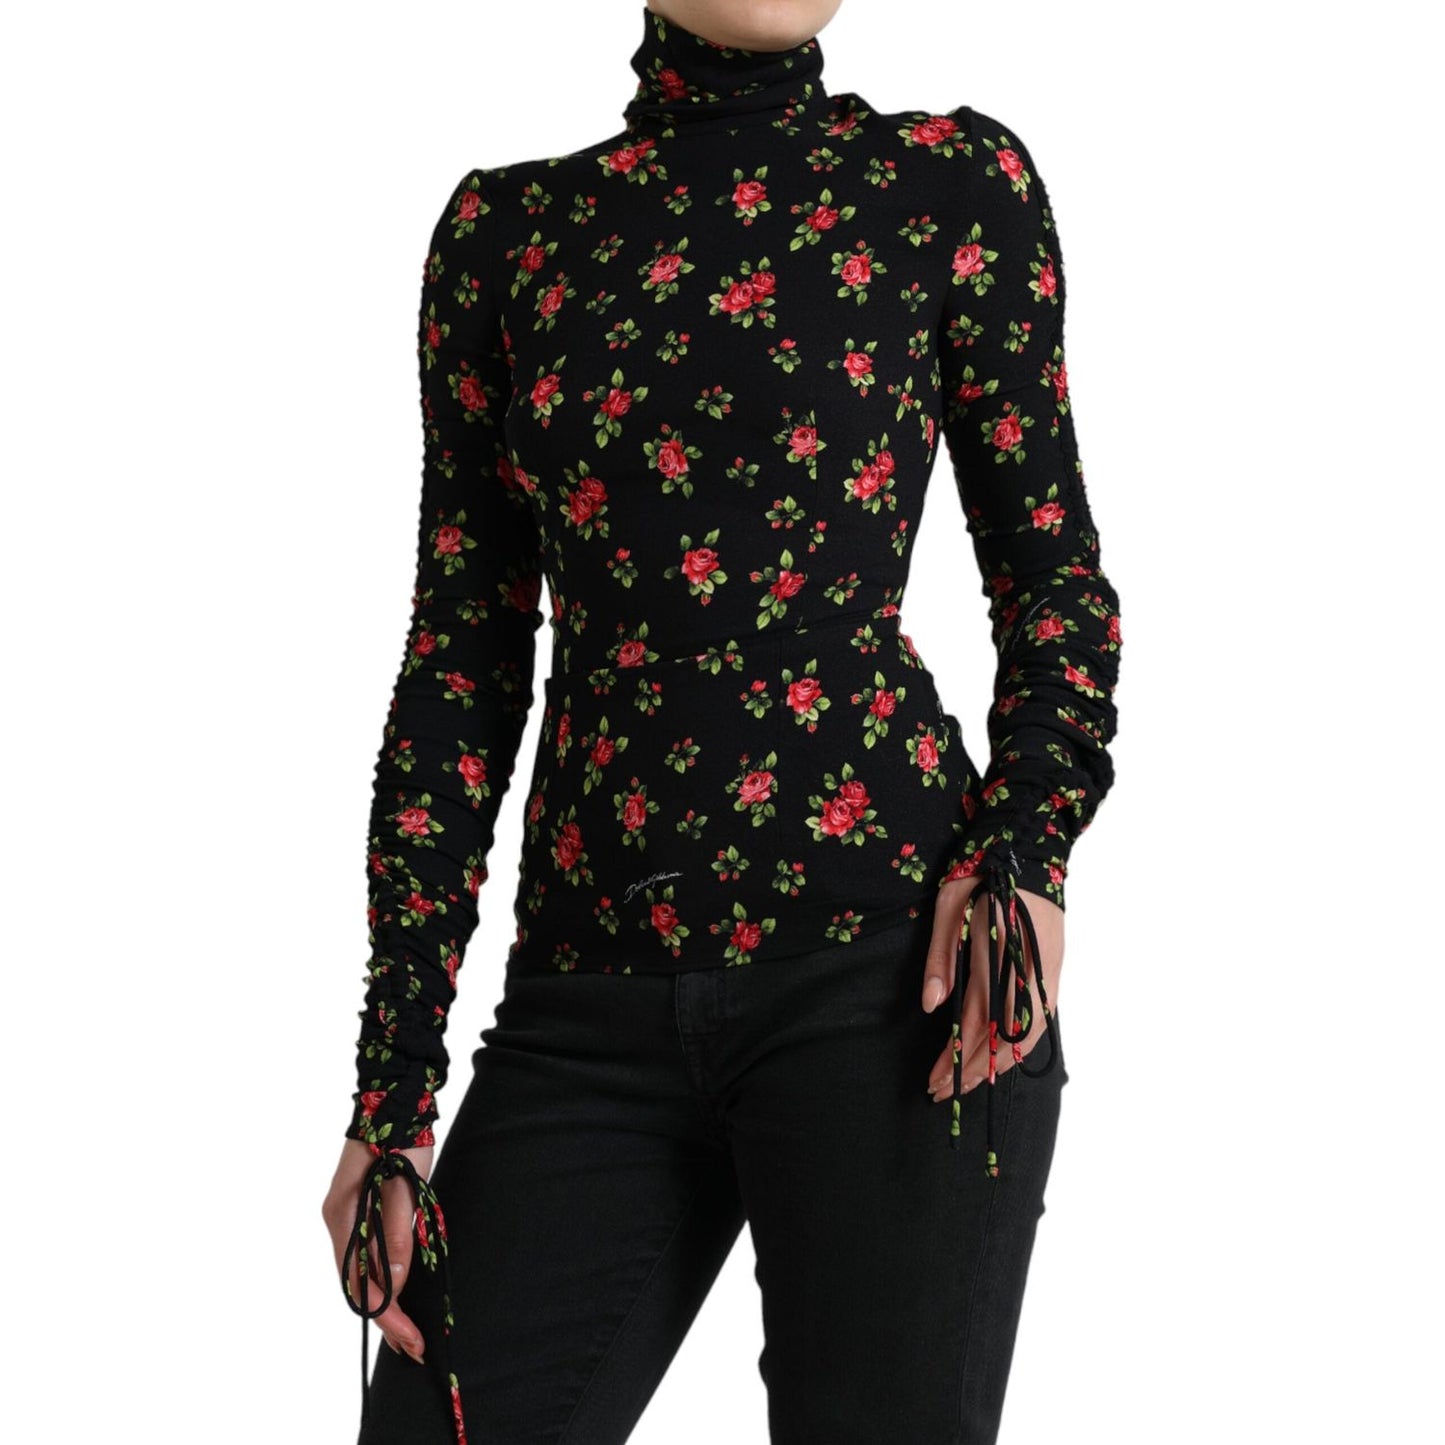 Dolce & Gabbana Elegant Floral Silk Blend Top black-rose-print-turtle-neck-blouse-top